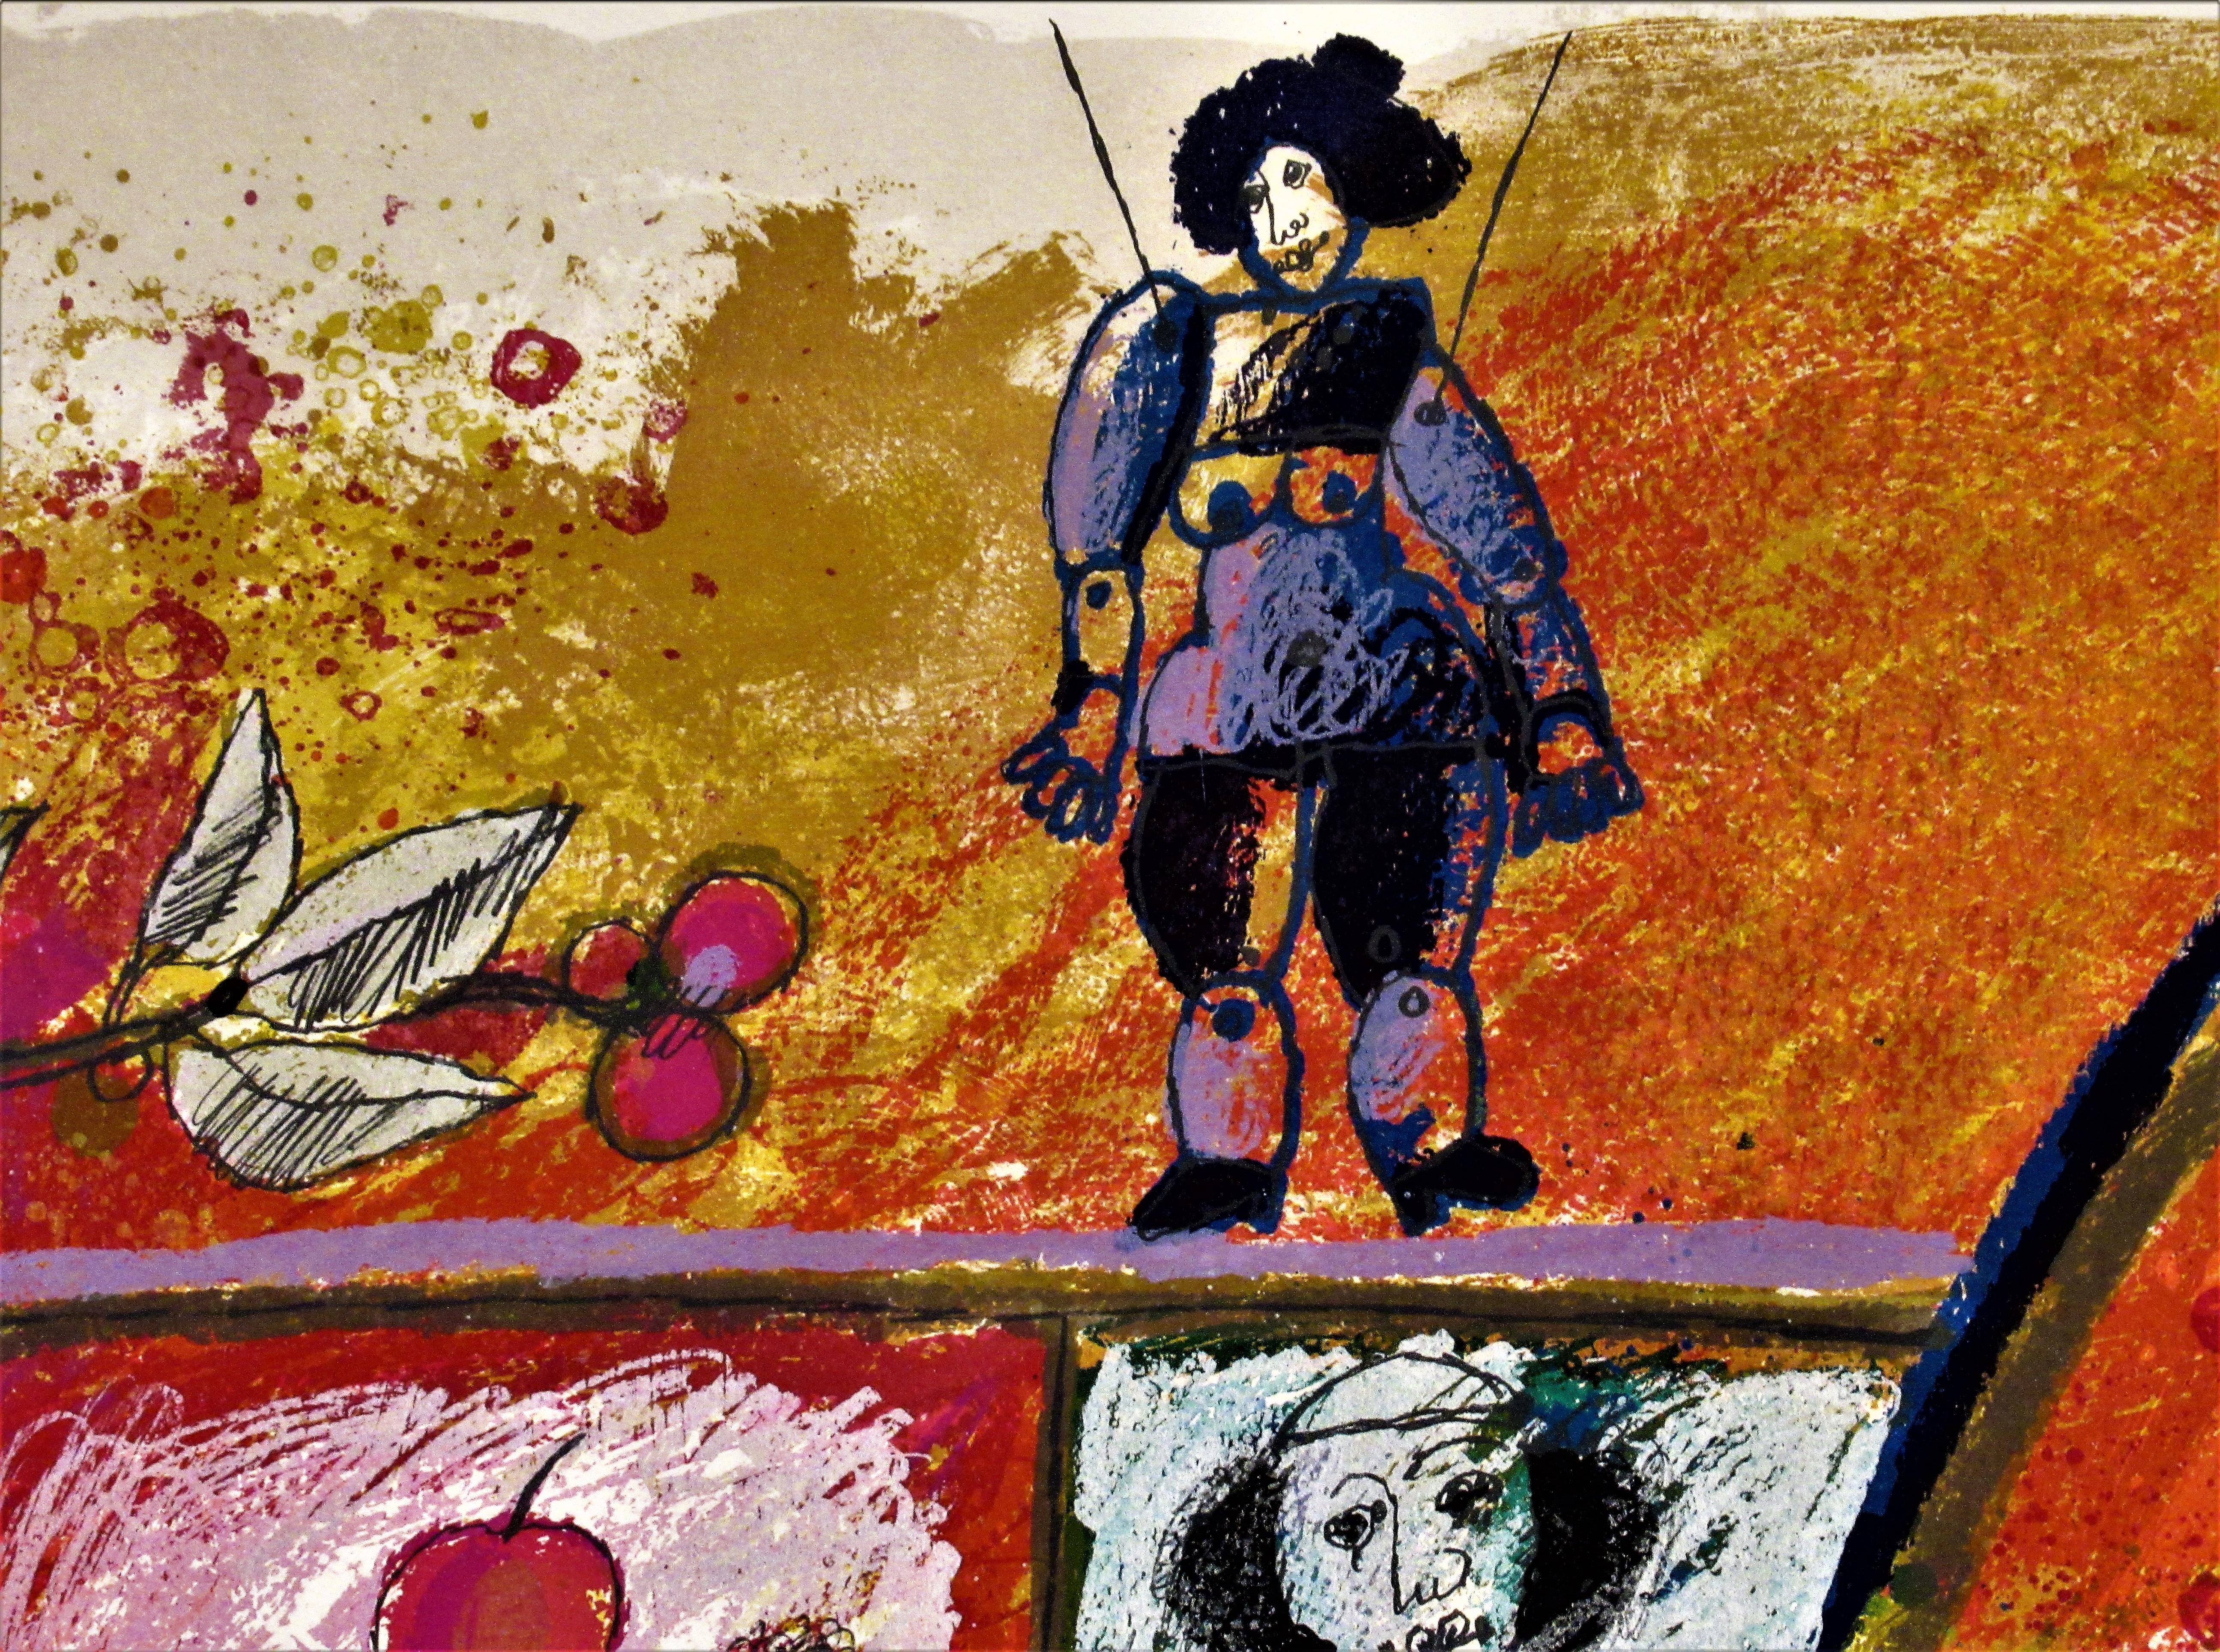 Artiste :   Theo Tobiasse (français/israélien, 1927-2012)
Titre :   Mere Biblique
Année :   1984
Moyen :	Lithographie en couleurs, avec collage
Edition :	Numérotation 172/175 au crayon
Papier :	Arches
Taille de l'image :   27.5 x 40 pouces
le format